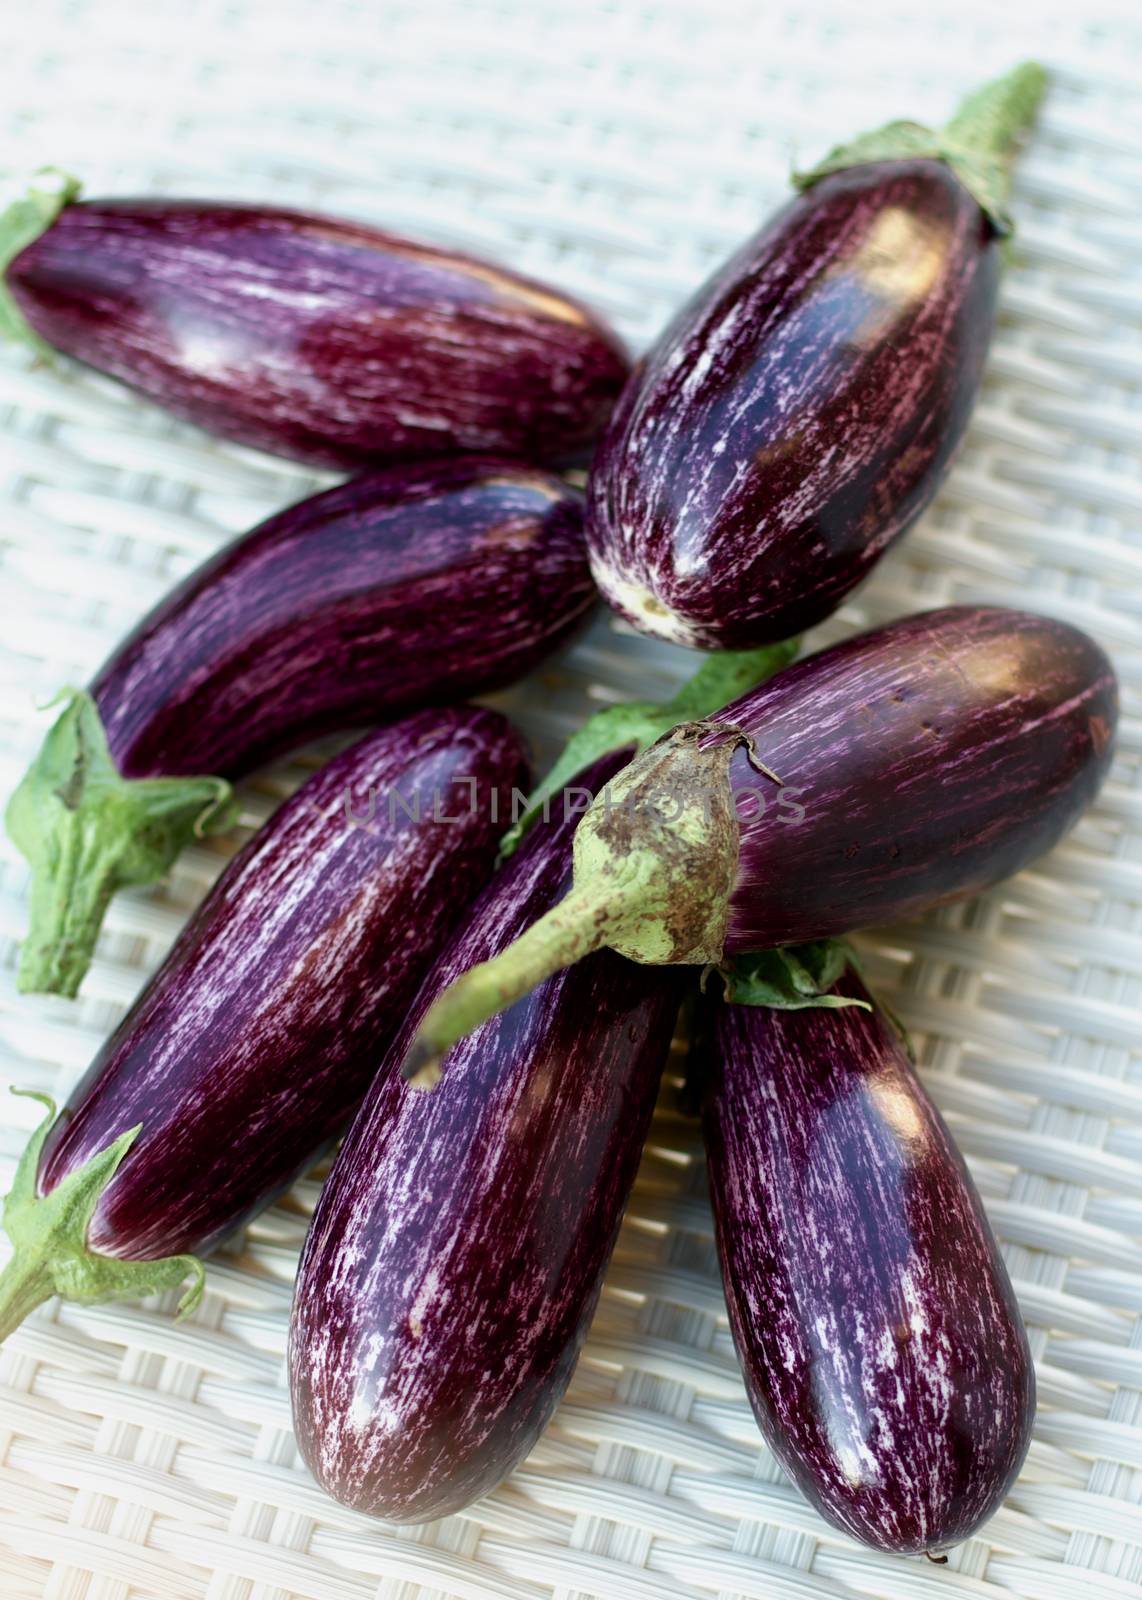 Raw Striped Eggplants by zhekos